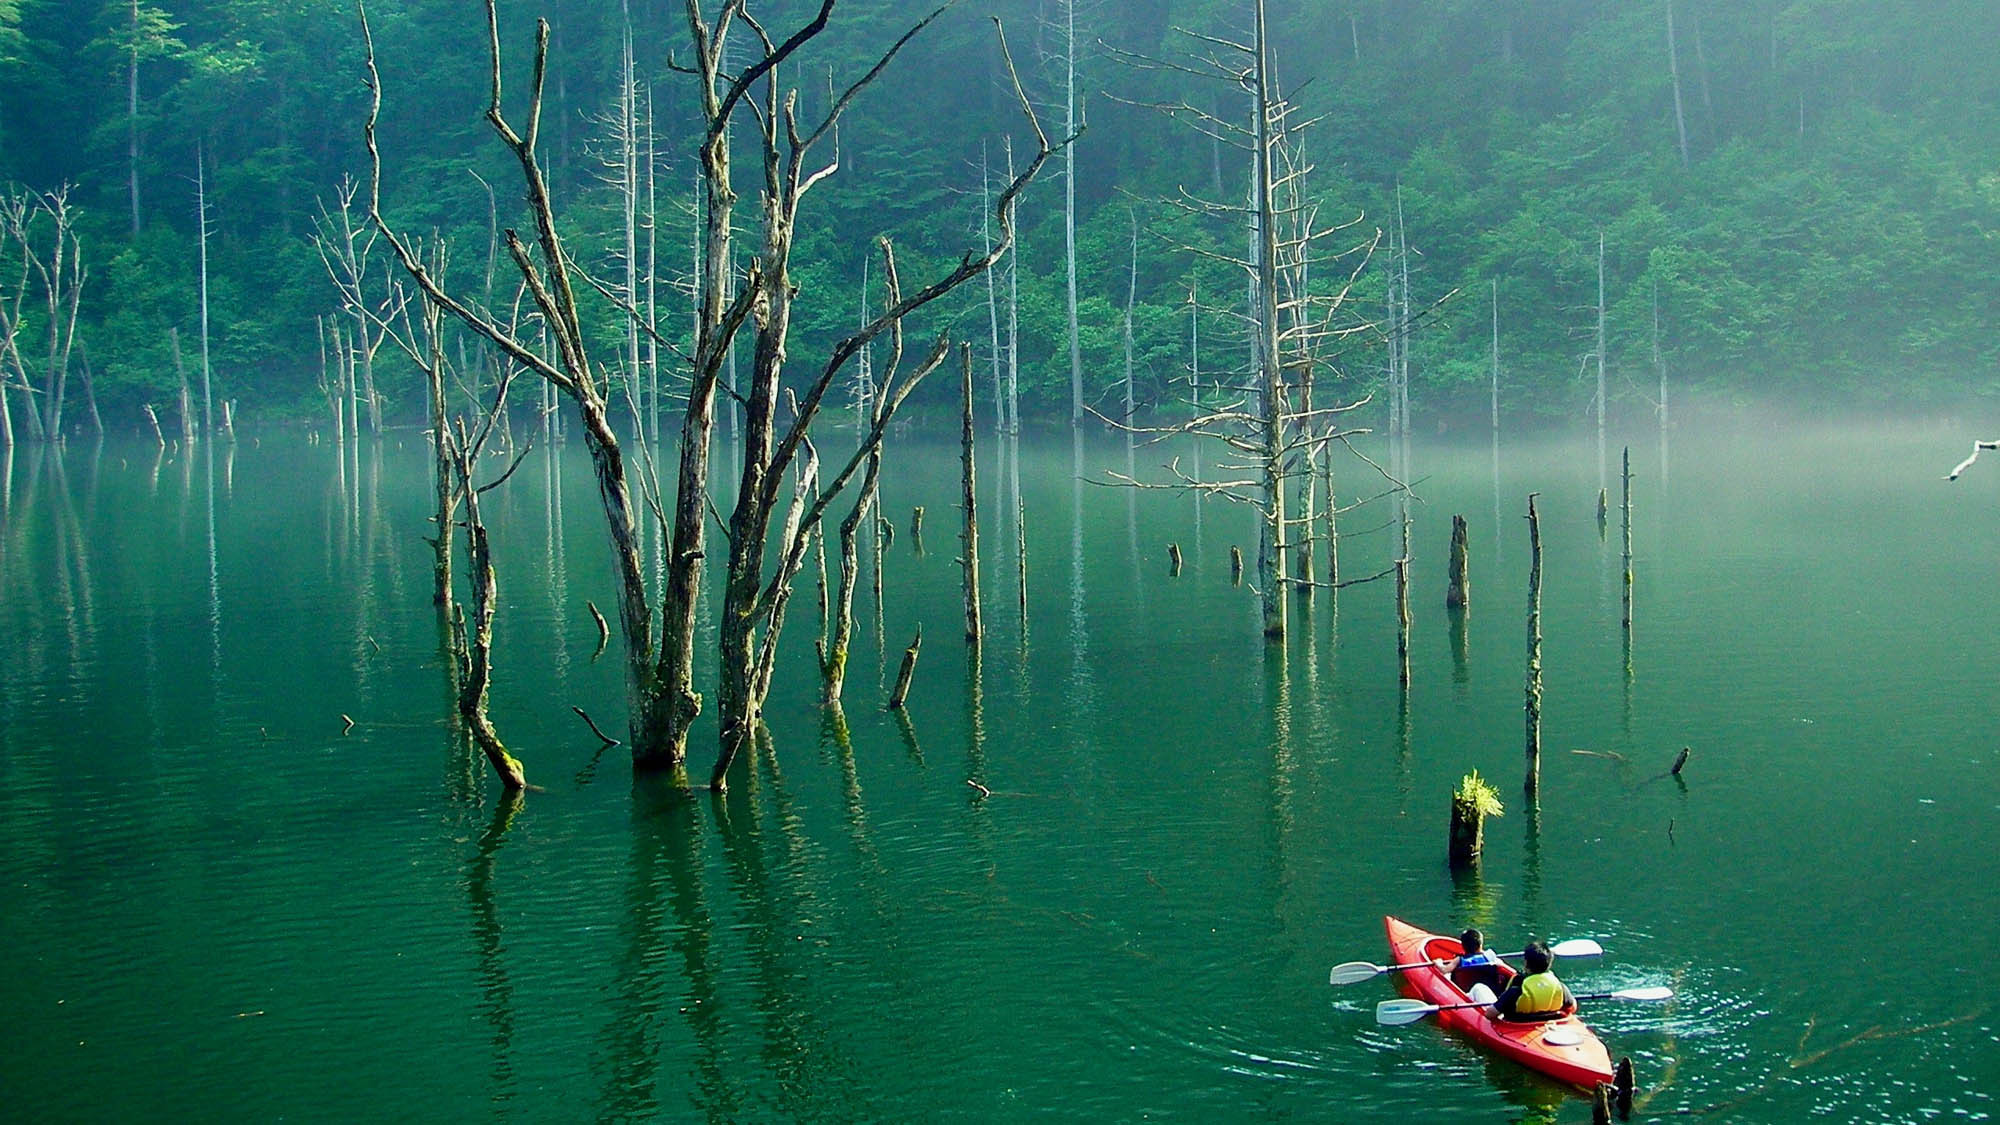 自然湖ネイチャーカヌーツアー深い森に囲まれ、ゆるやかな時間、水のゆらぎを感じる森林浴カヌーツアー